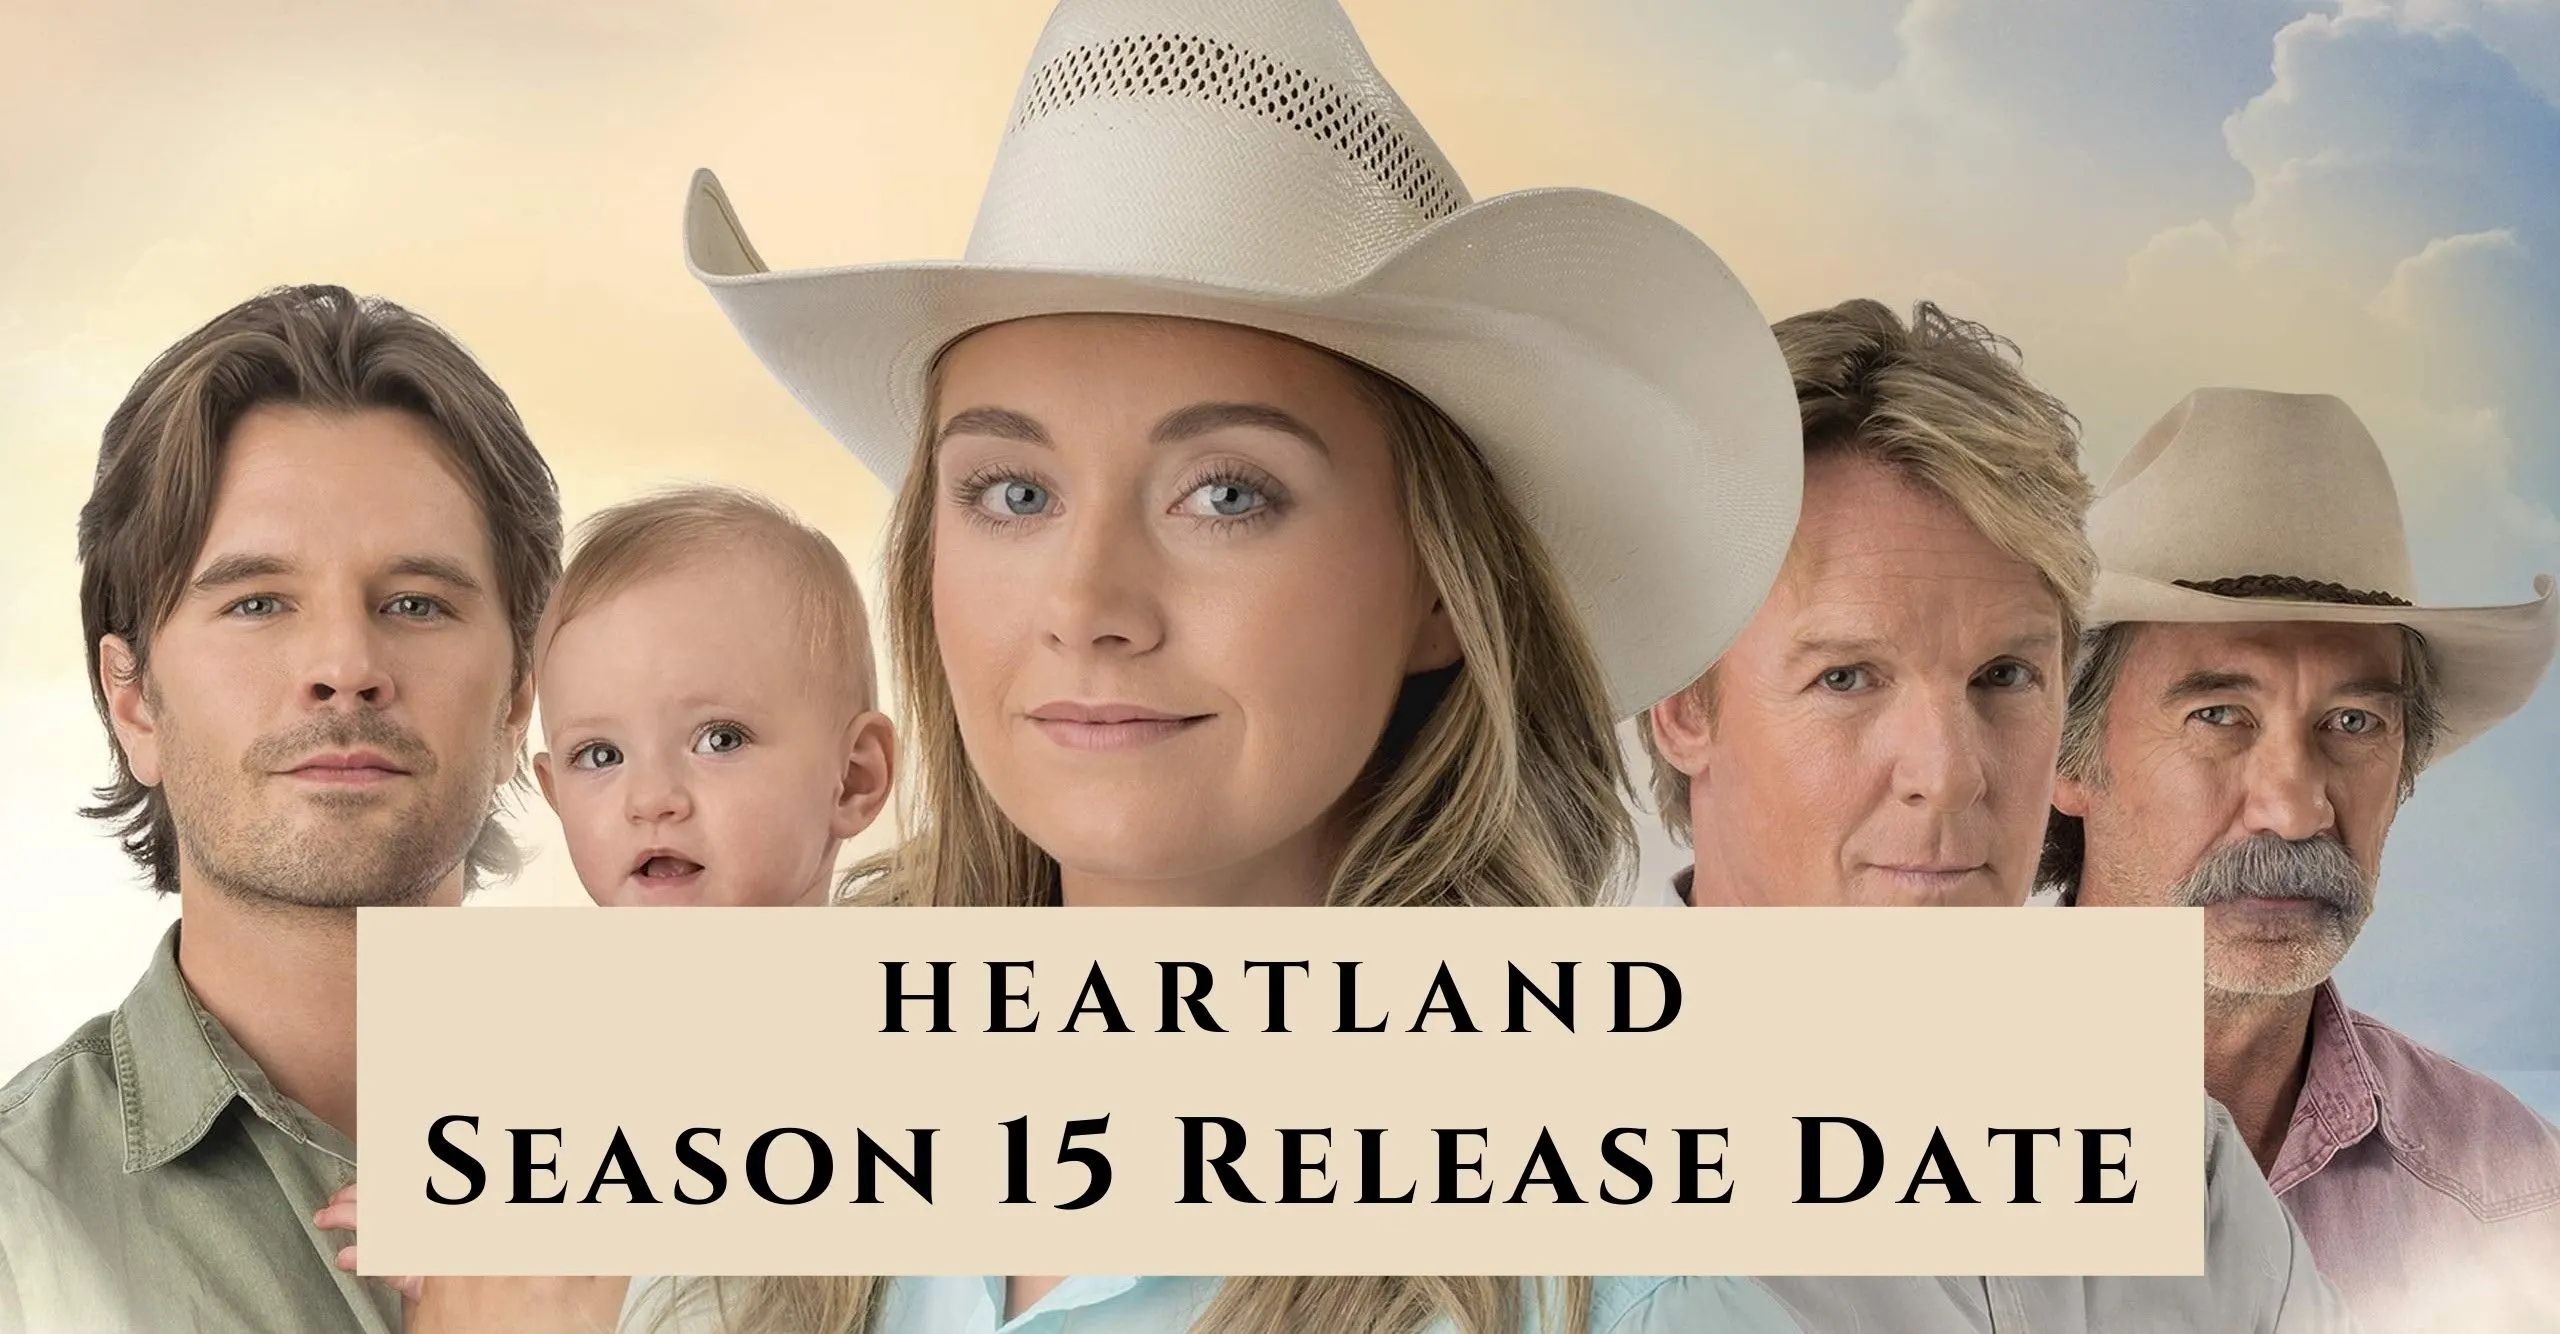 Heartland Season 15 release date